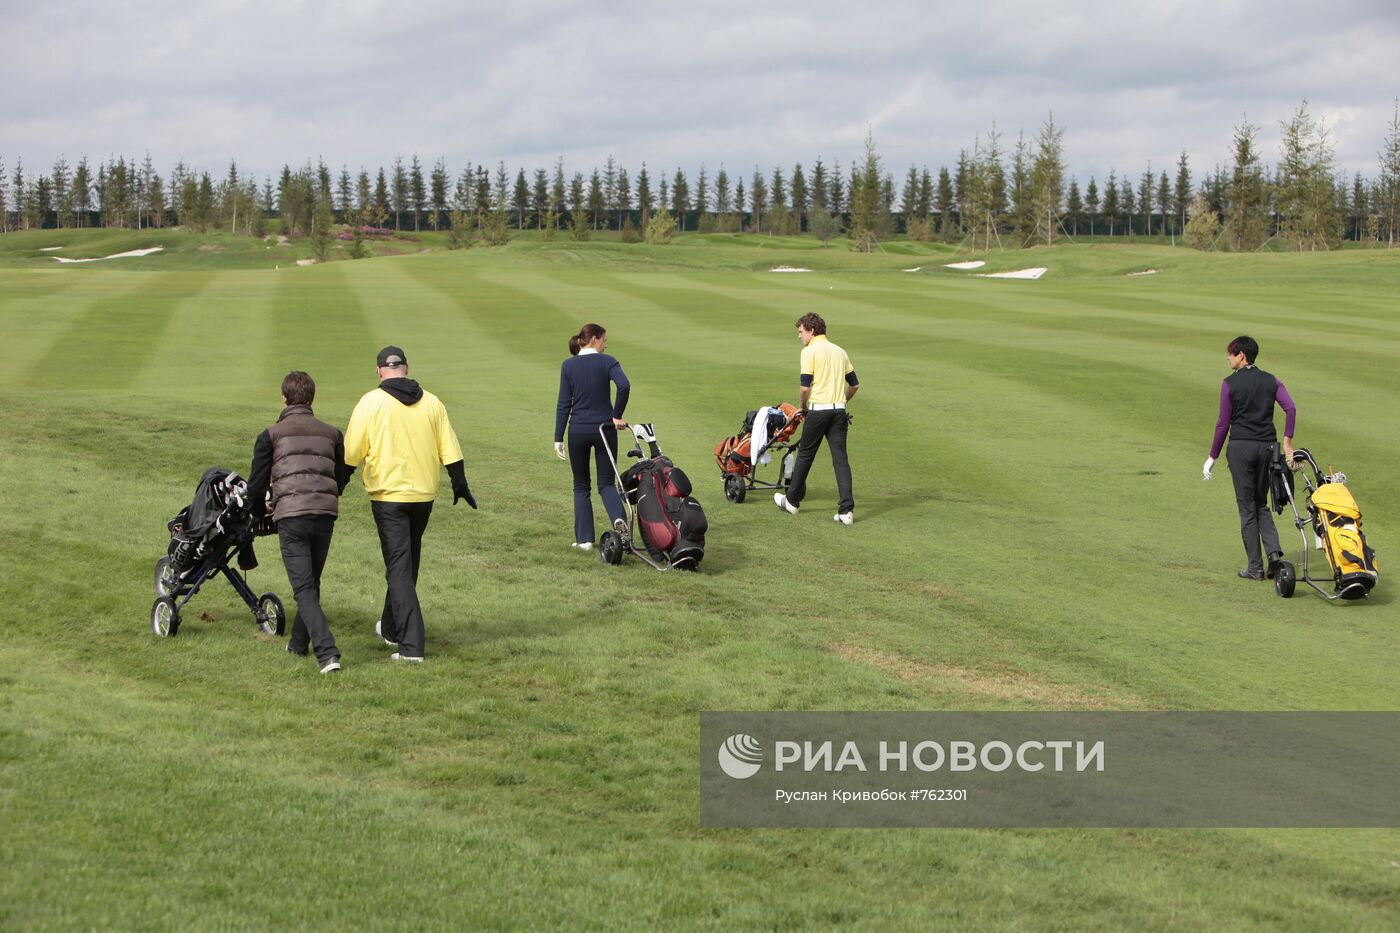 Открытие гольф-клуба в загородном поместье Agalarov Estate